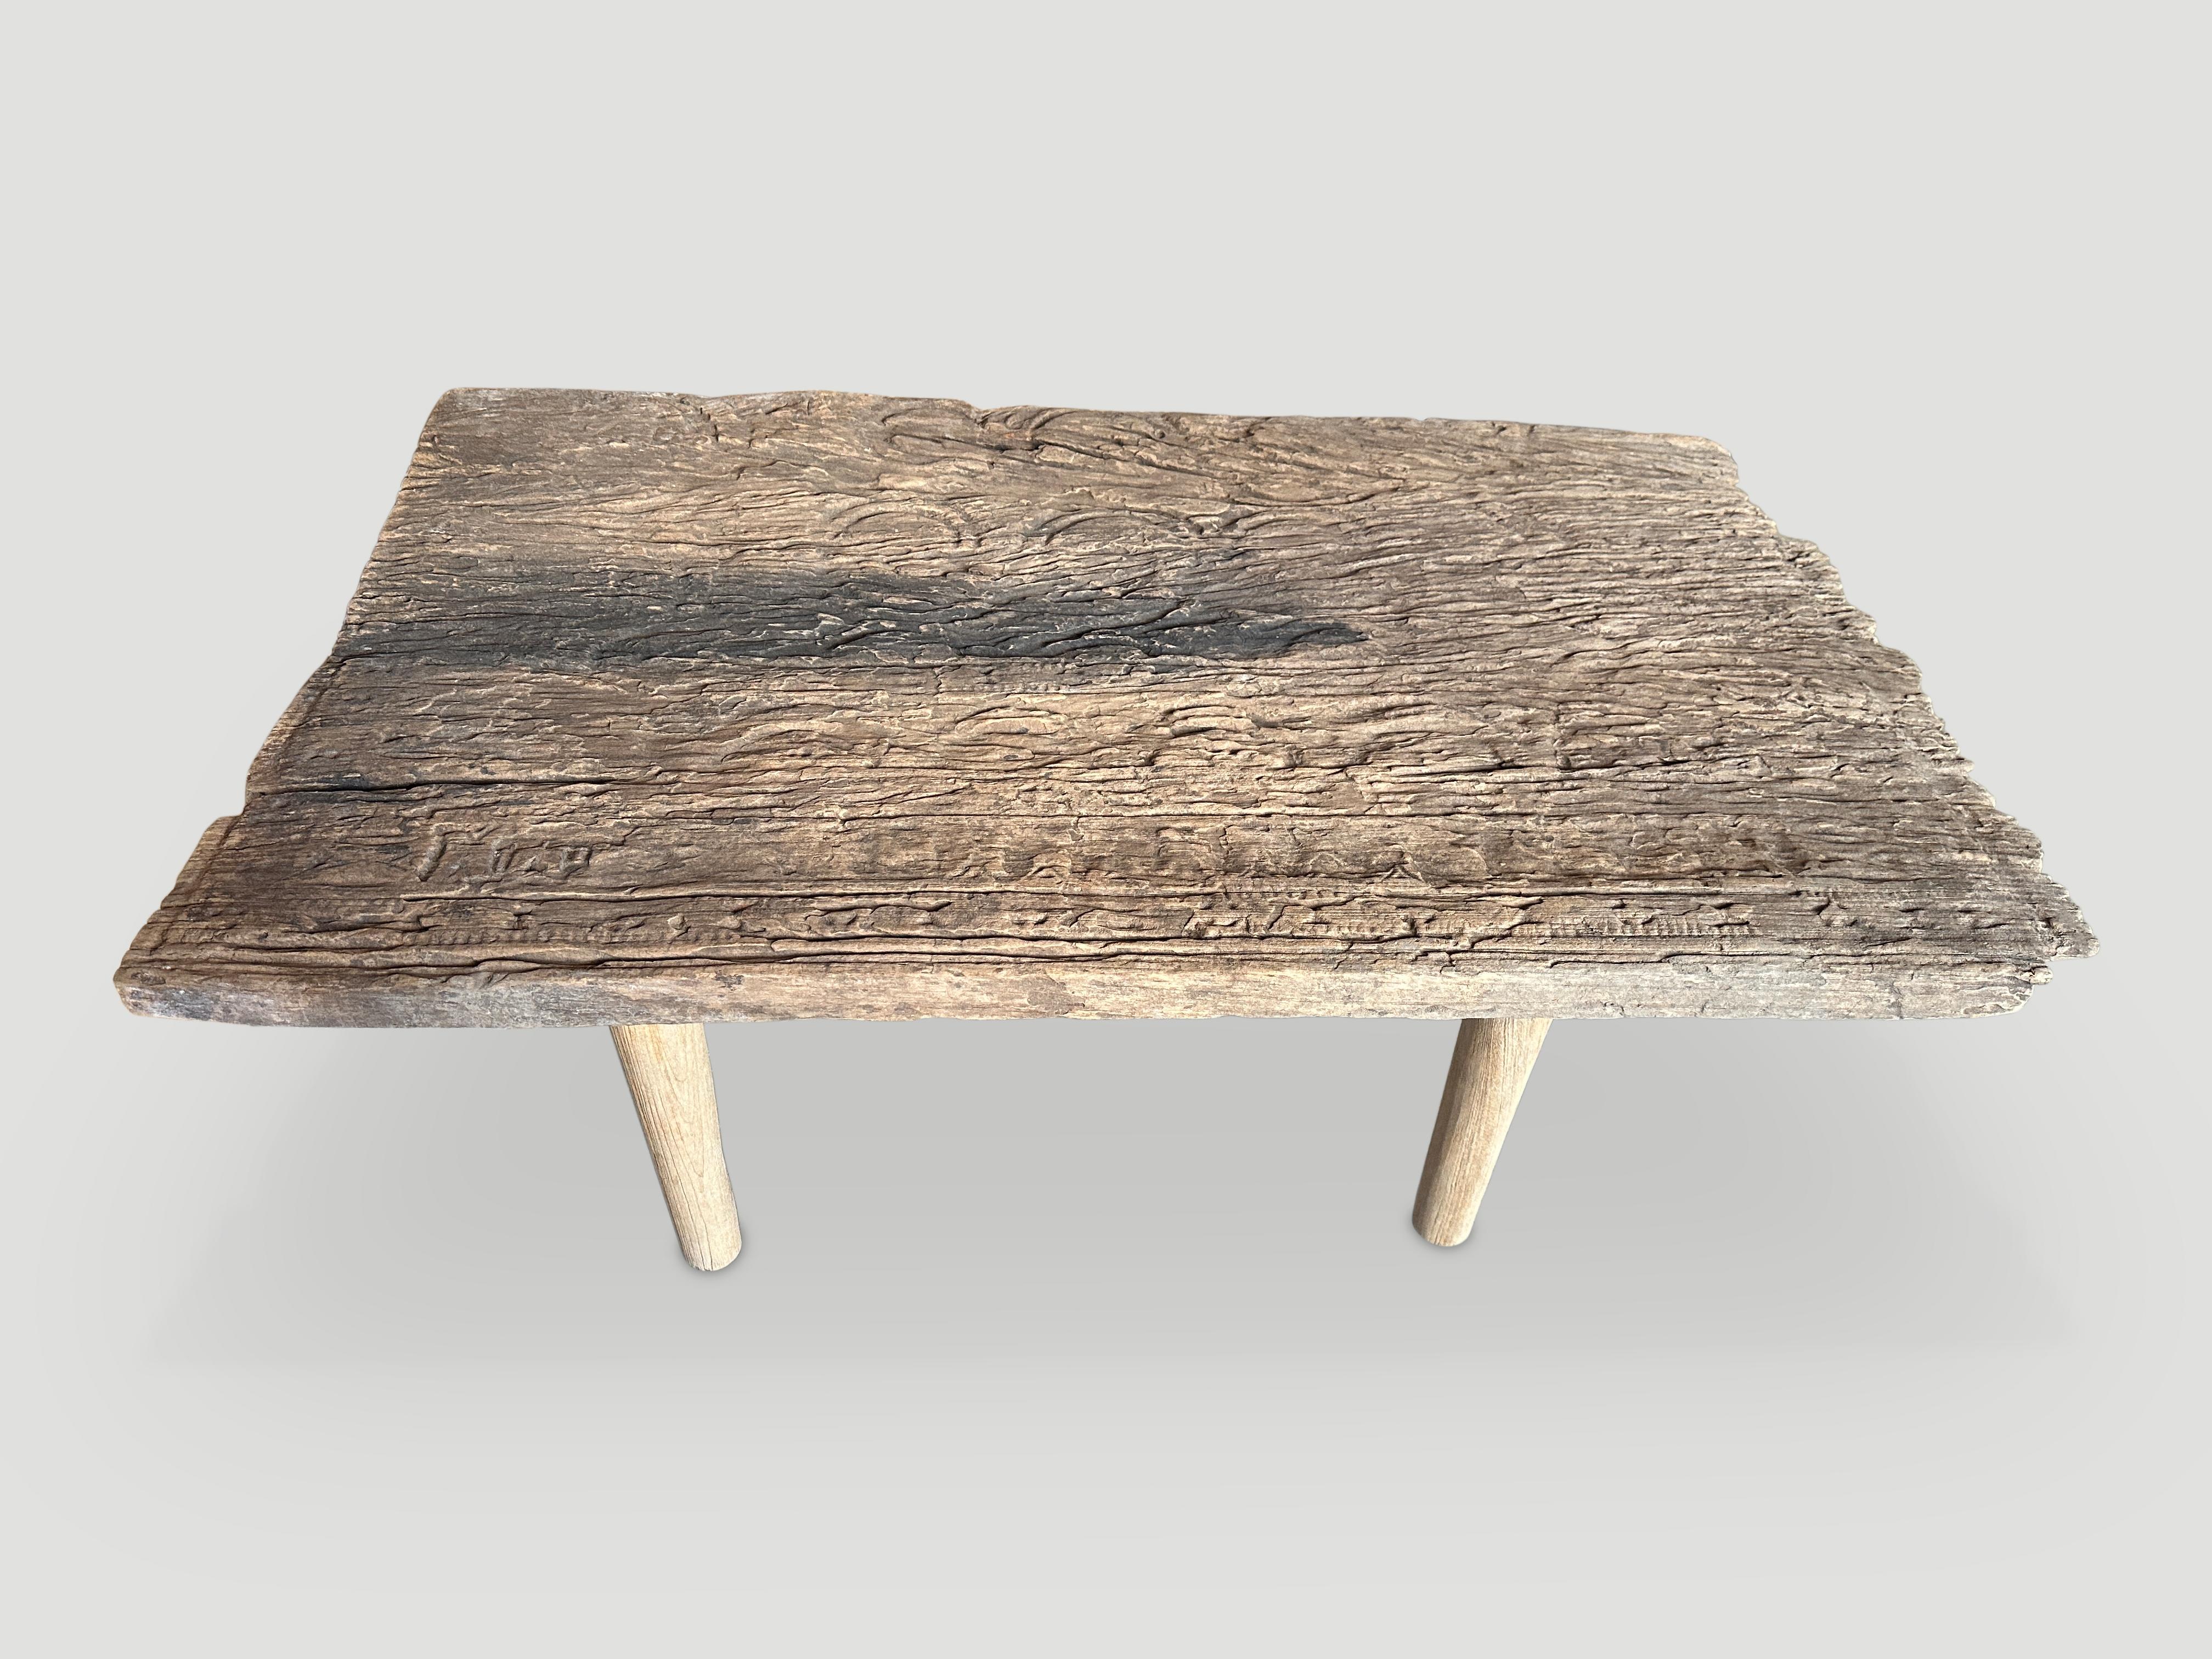 Magnifique table basse Wabi Sabi sculptée à la main. Nous avons ajouté des pieds minimalistes à cette pièce de bois unique utilisée à l'origine comme panneau architectural. 

Cette table basse a été fabriquée à la main dans l'esprit de Wabi Sabi,